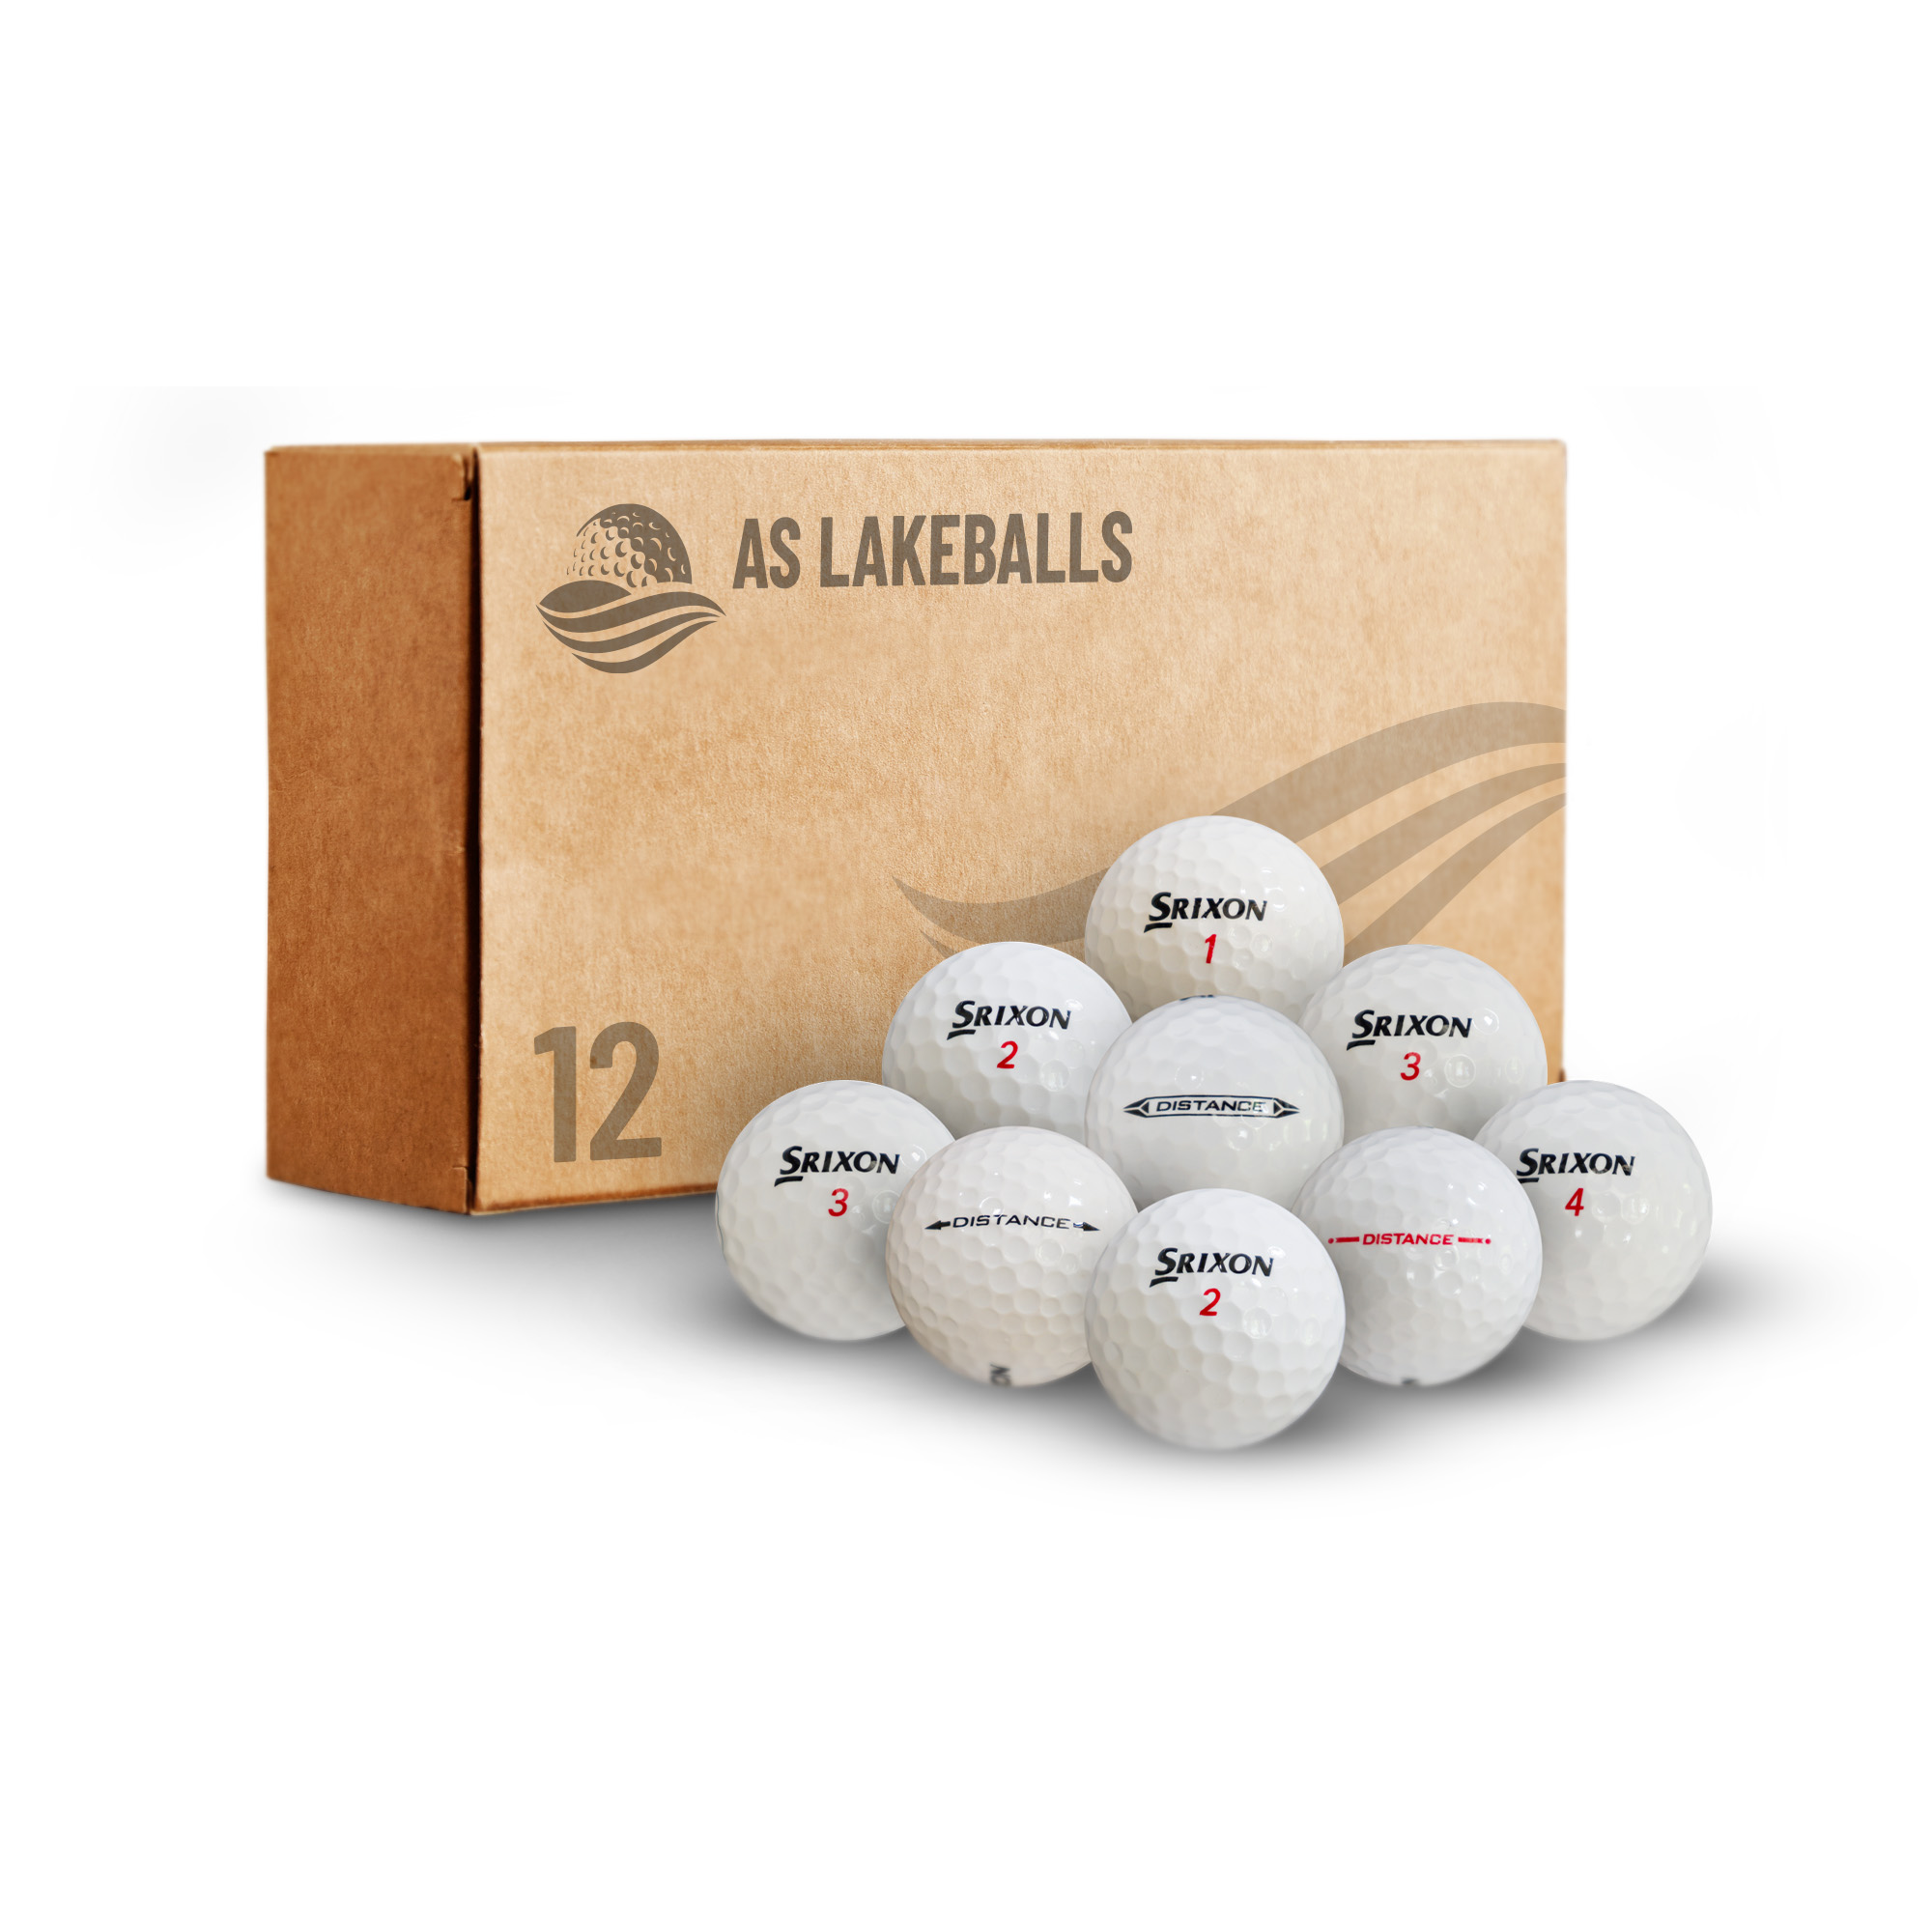 12 Stück Srixon Distance AA Lakeballs bei AS Lakeballs günstig kaufen